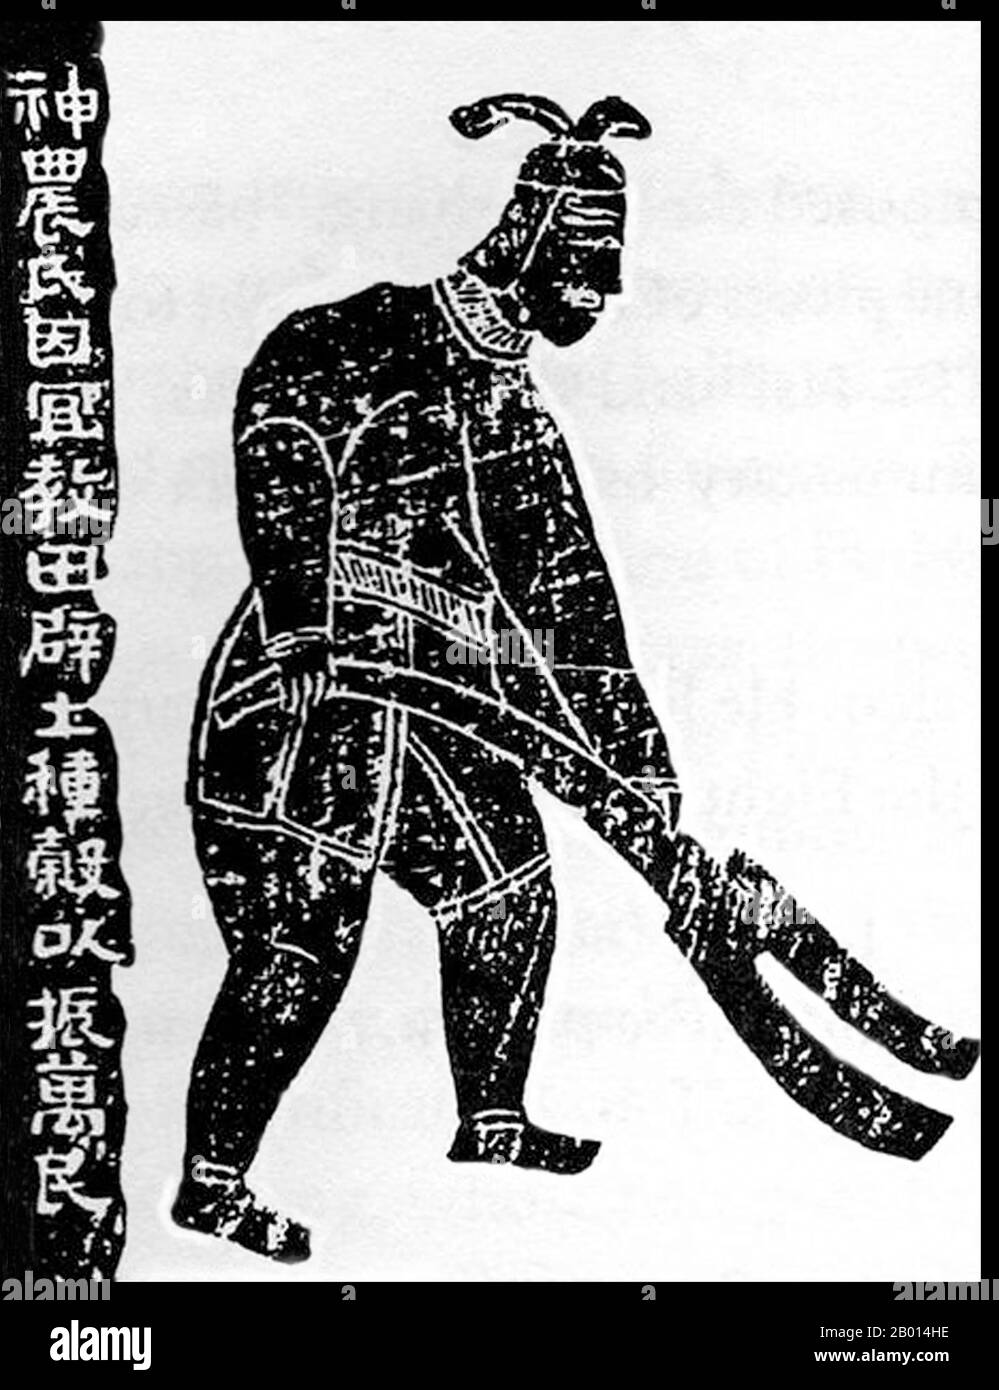 China: Souveräner Shennong, drei Herrscher und fünf Kaiser Periode (c. 3500-2000 BCE). Wandbild der Han-Dynastie, 151 u.Z. Shennong (Vietnamesisch: Than Nong), auch bekannt als Kaiser der fünf Körner (Wugu xiandì), war ein Herrscher über China und Kulturheld, der vor etwa 5,000 Jahren lebte und den alten Chinesen die Praxis der Landwirtschaft lehrte. Entsprechend bedeutet sein Name ' göttlicher Bauer', und er wird als eine Gottheit in der chinesischen Volksreligion verehrt. Es wird auch angenommen, dass er Tee entdeckt hat. Stockfoto